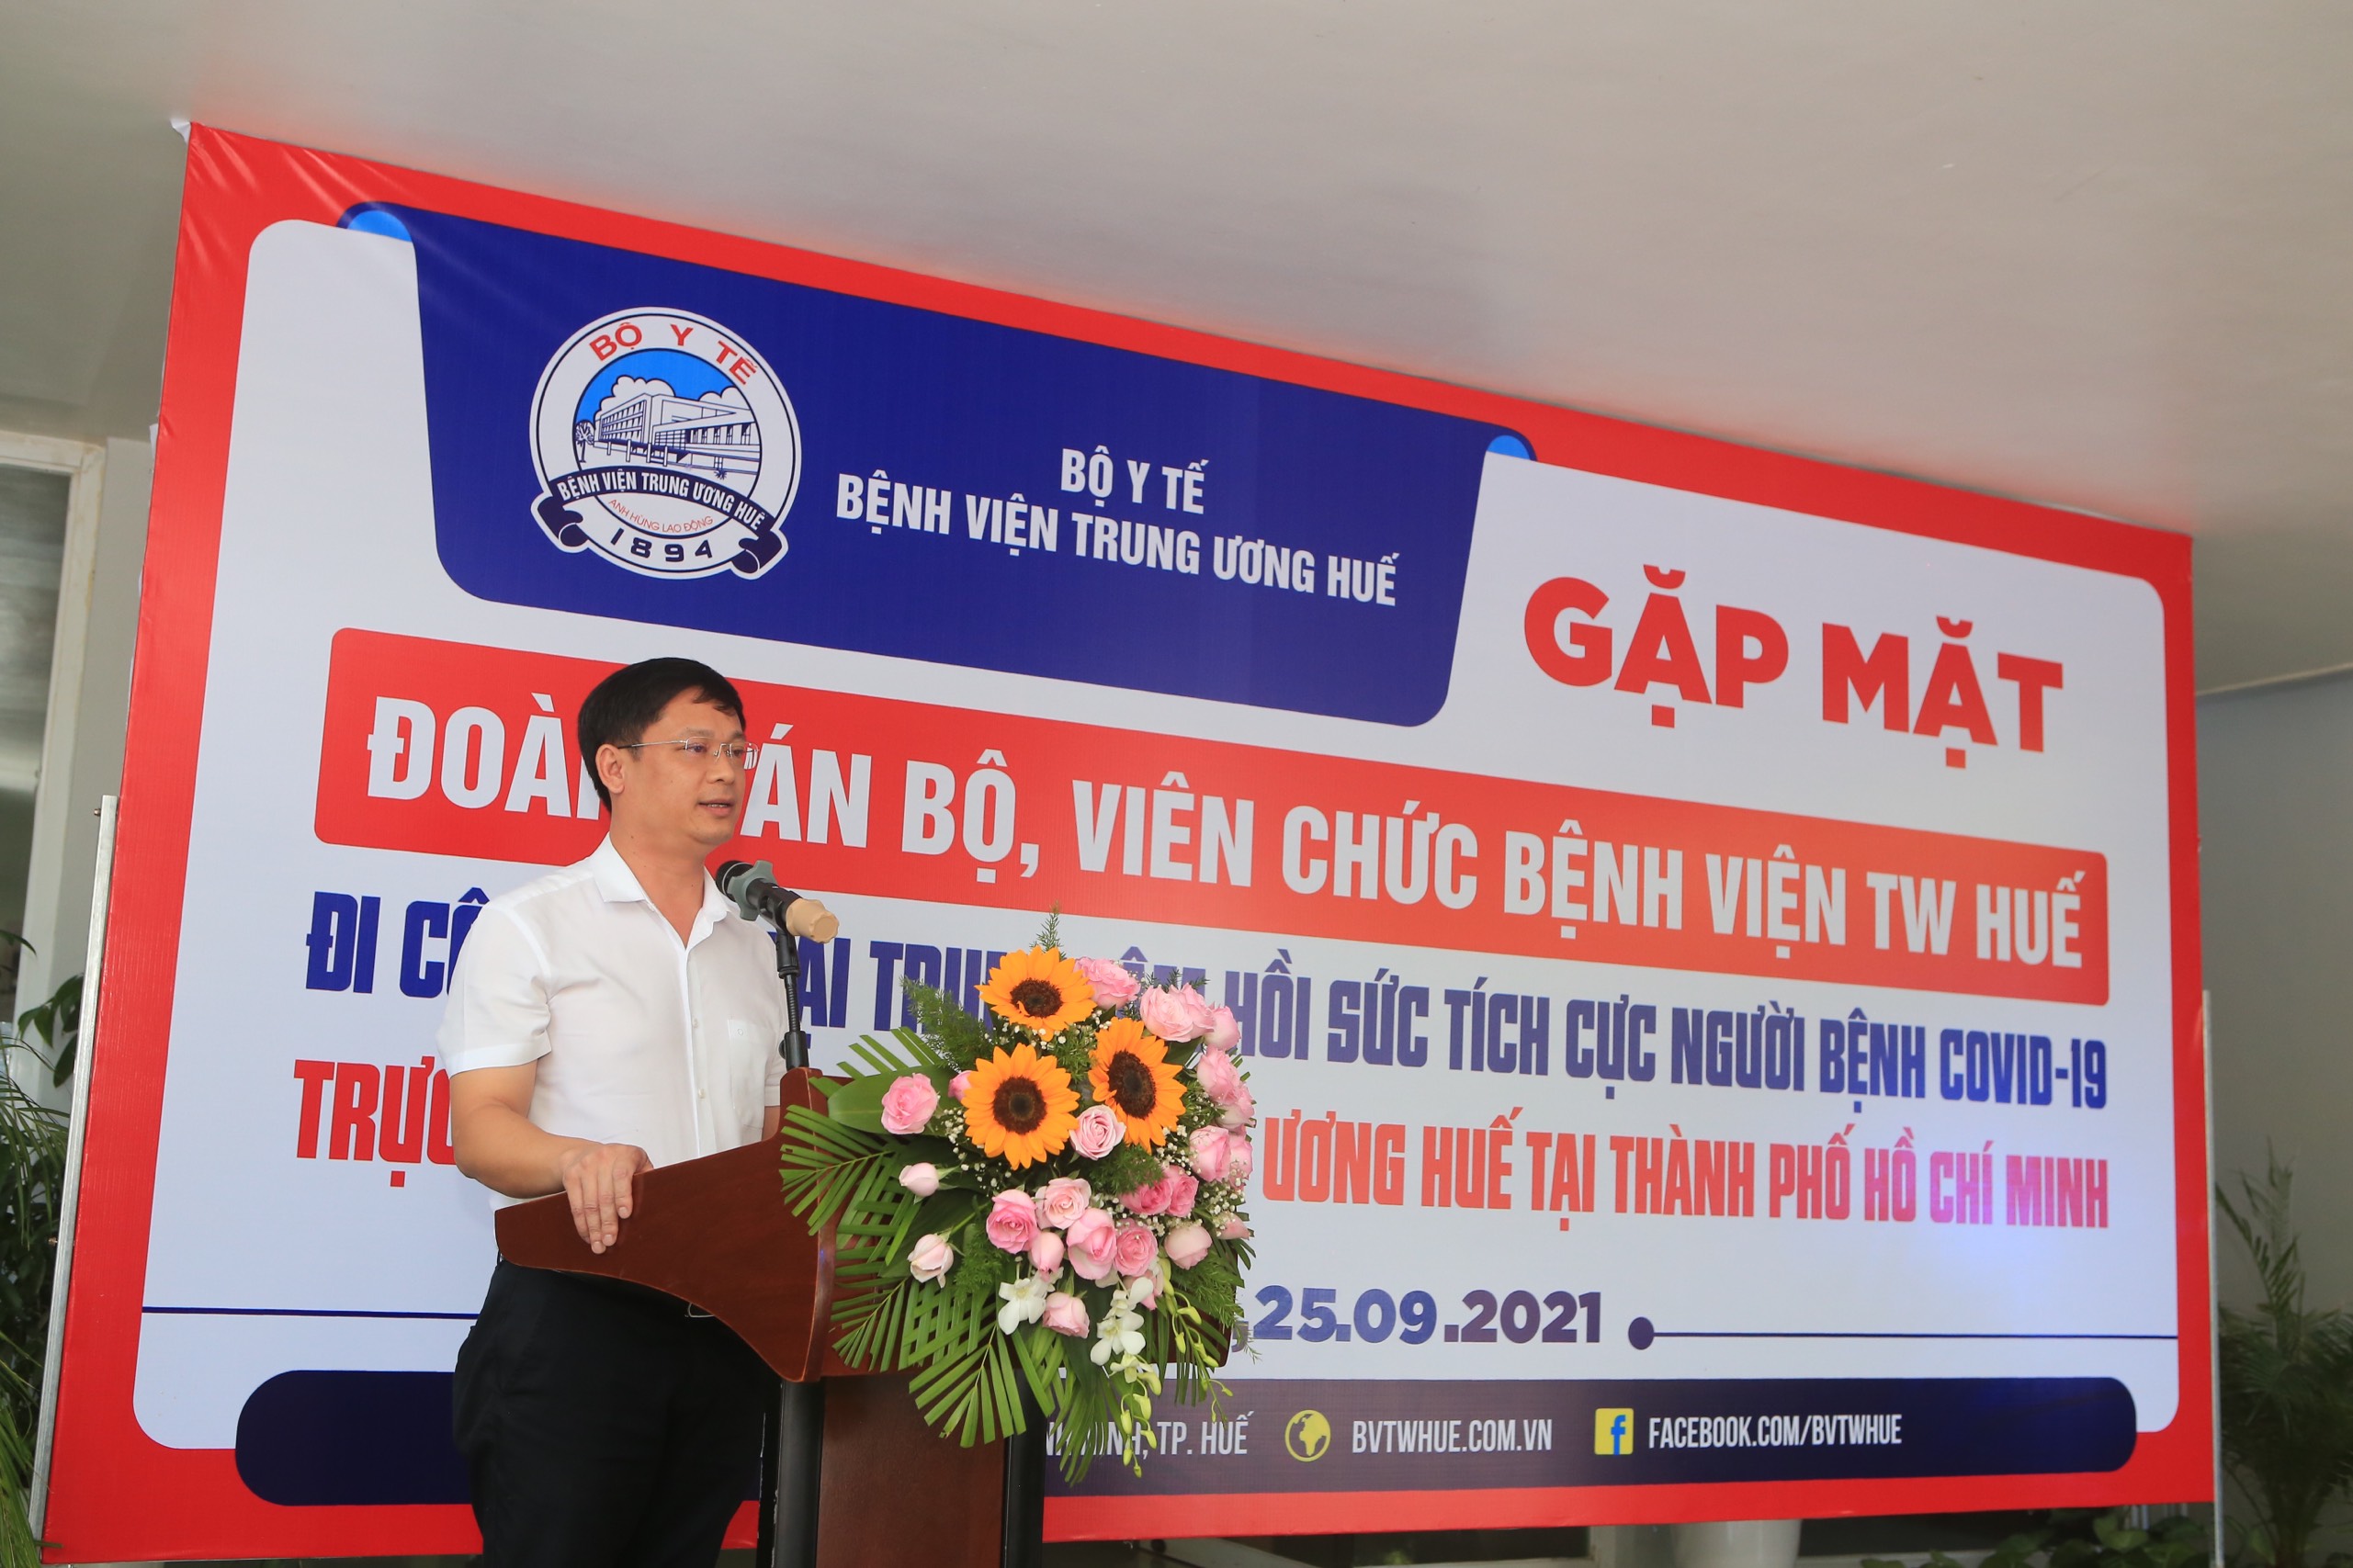 Phó Chủ tịch UBND tỉnh Thừa Thiên - Huế Nguyễn Thanh Bình tham dự buổi lễ.